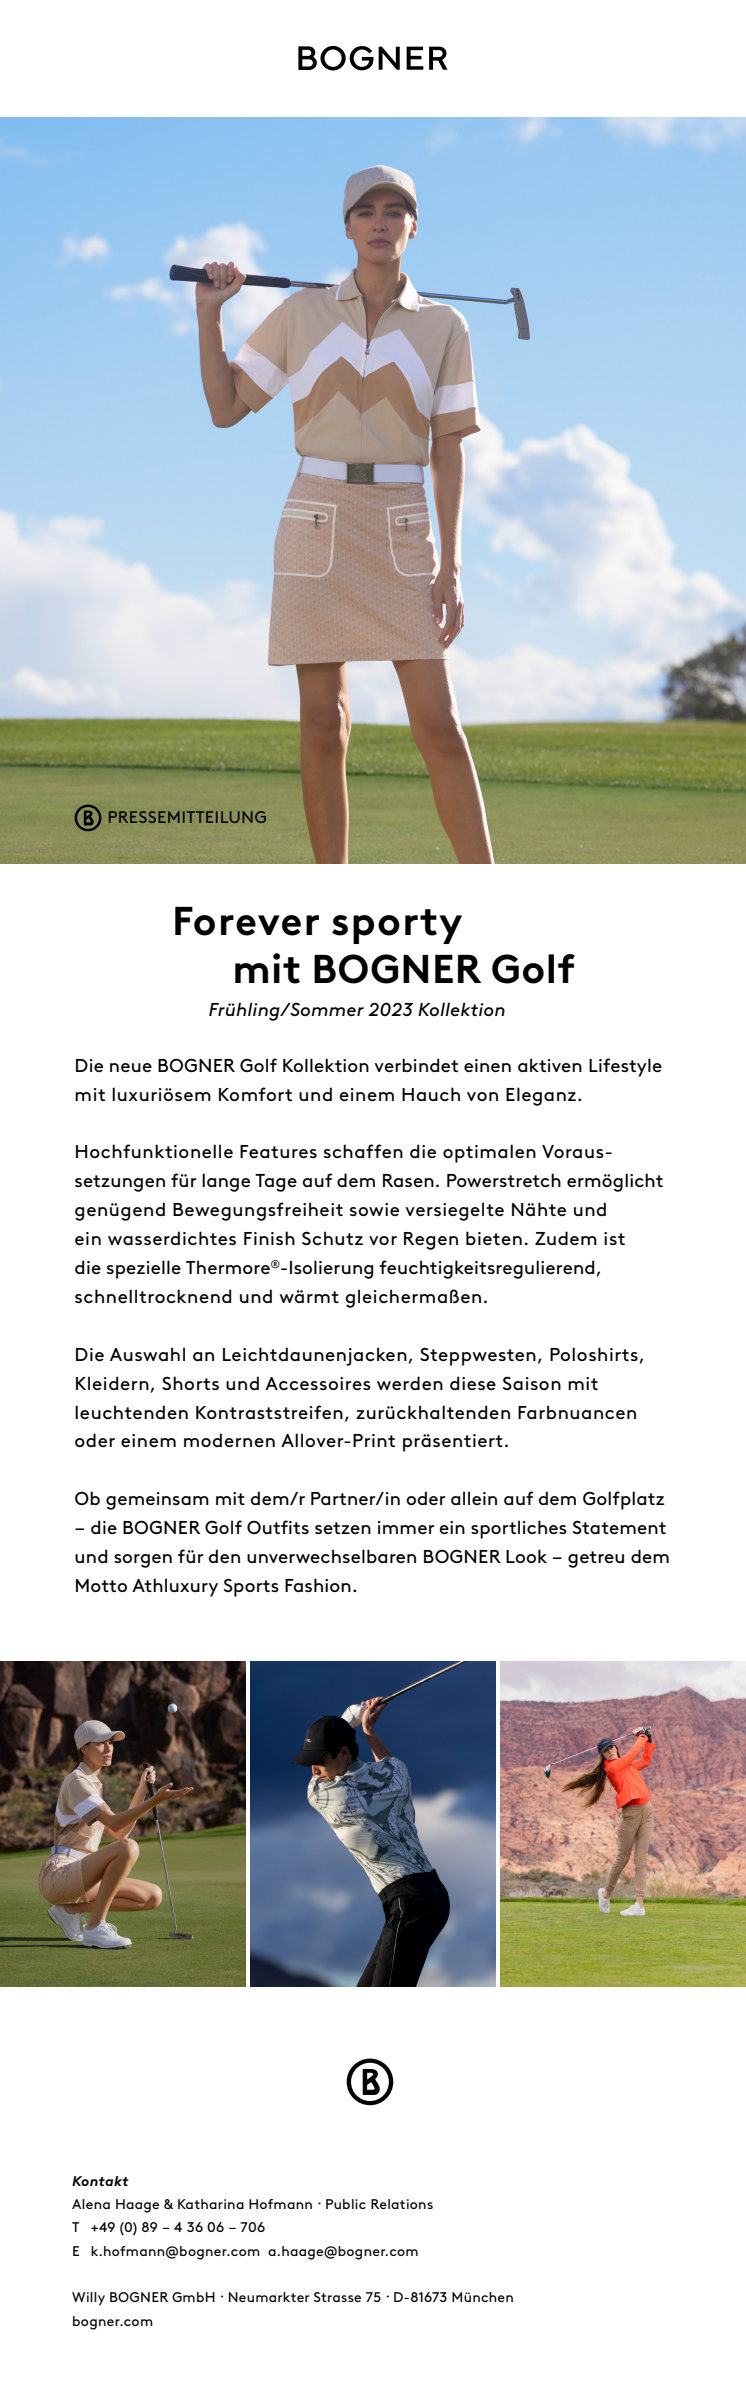 BOGNER Golf_Spring Summer 2023_Pressemitteilung_DE.pdf